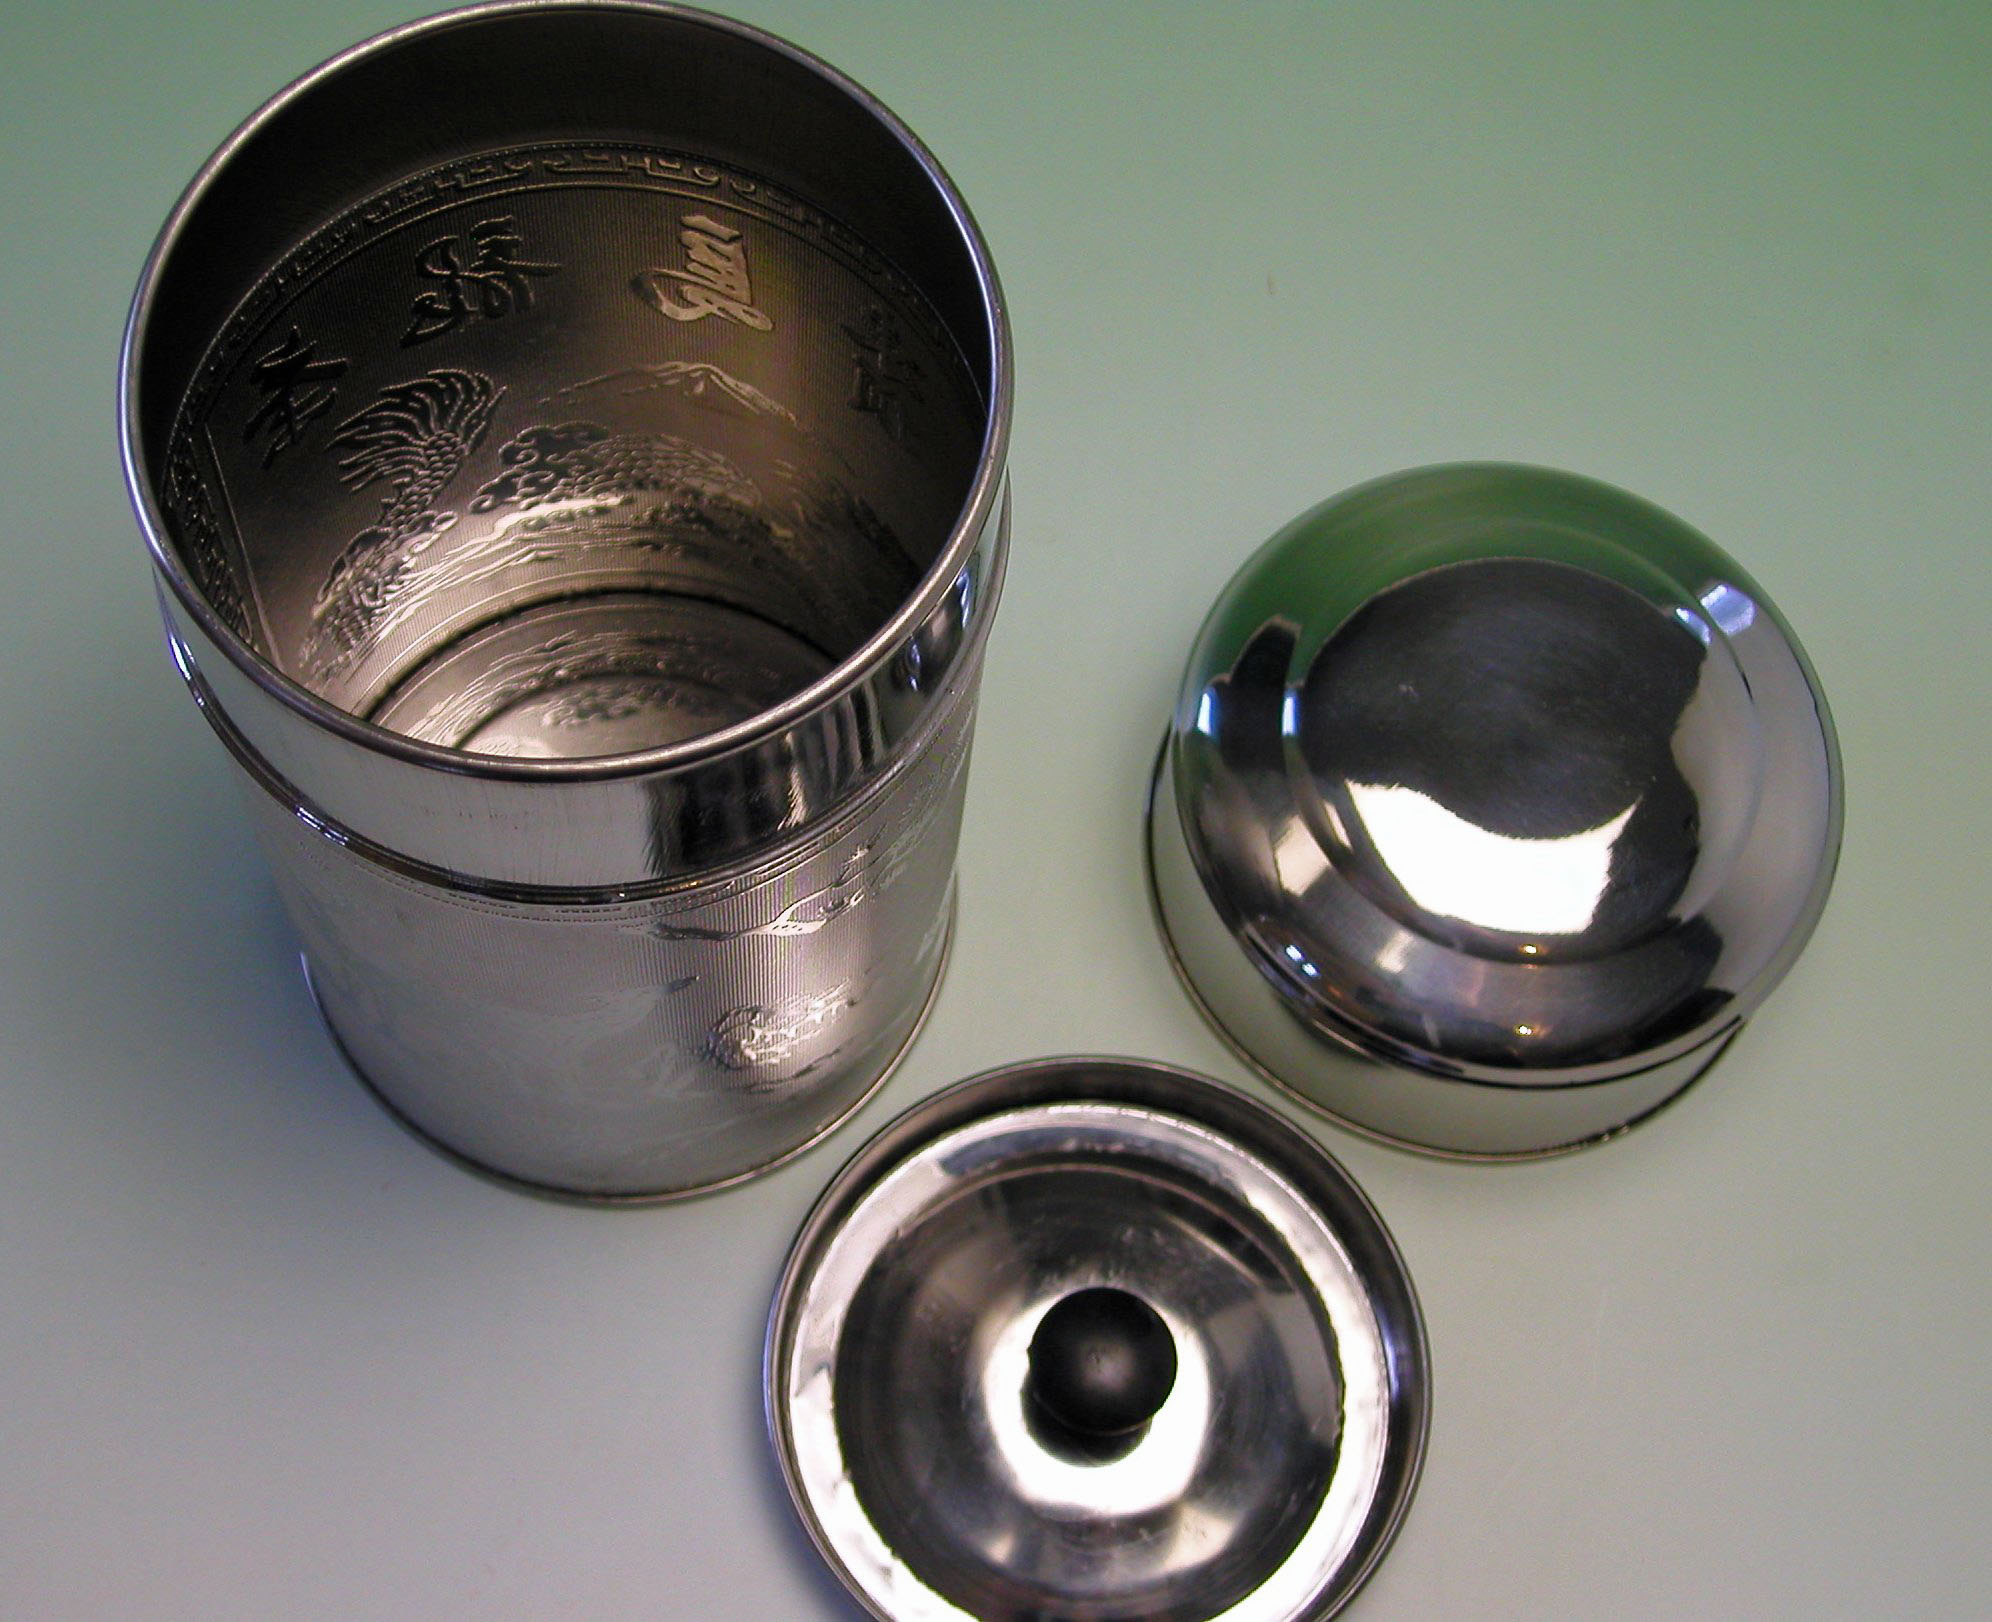 【中国茶具】スチール製茶葉保存容器